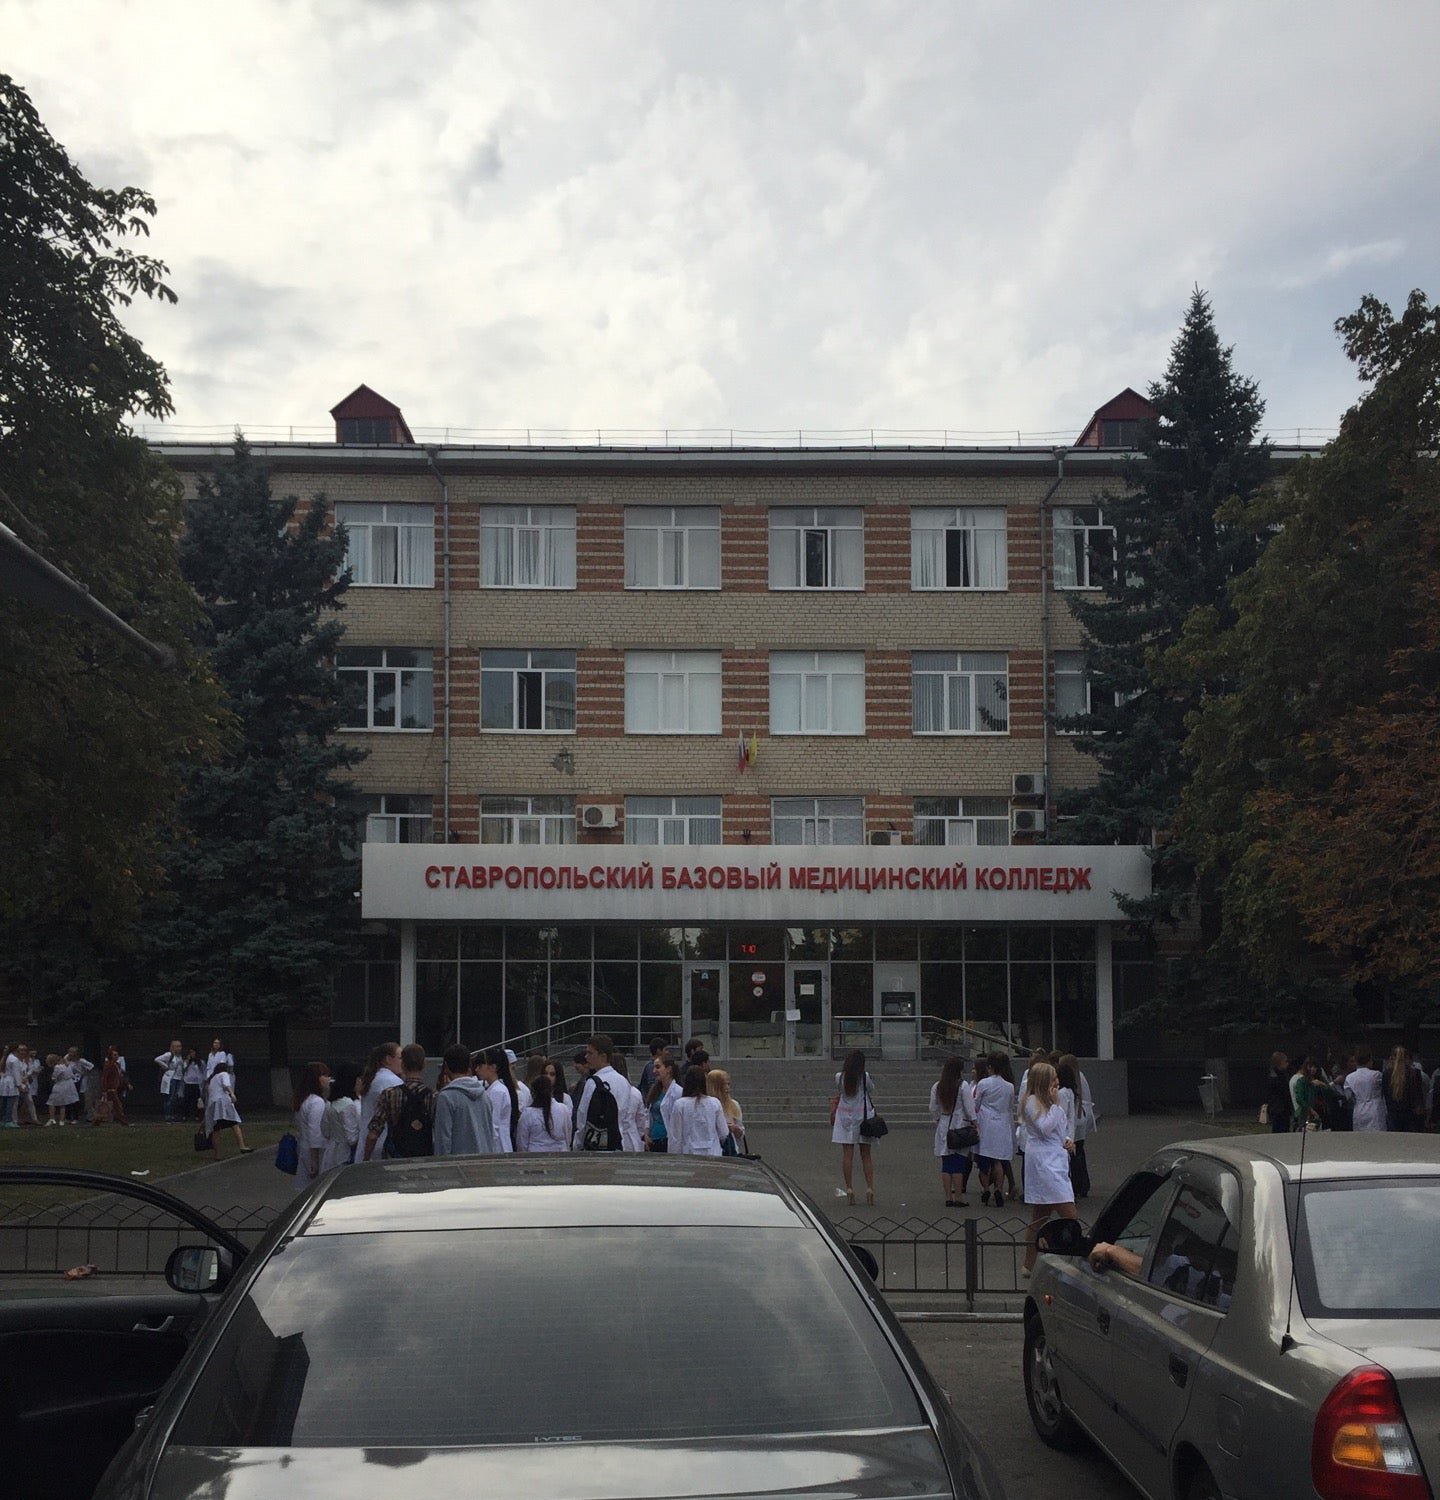 Колледж ставрополь после 9. Медицинский колледж Ставрополь на Серова. СБМК колледж Ставрополь. Серова 279 Ставрополь медколледж. Колледж на Серова в Ставрополе.